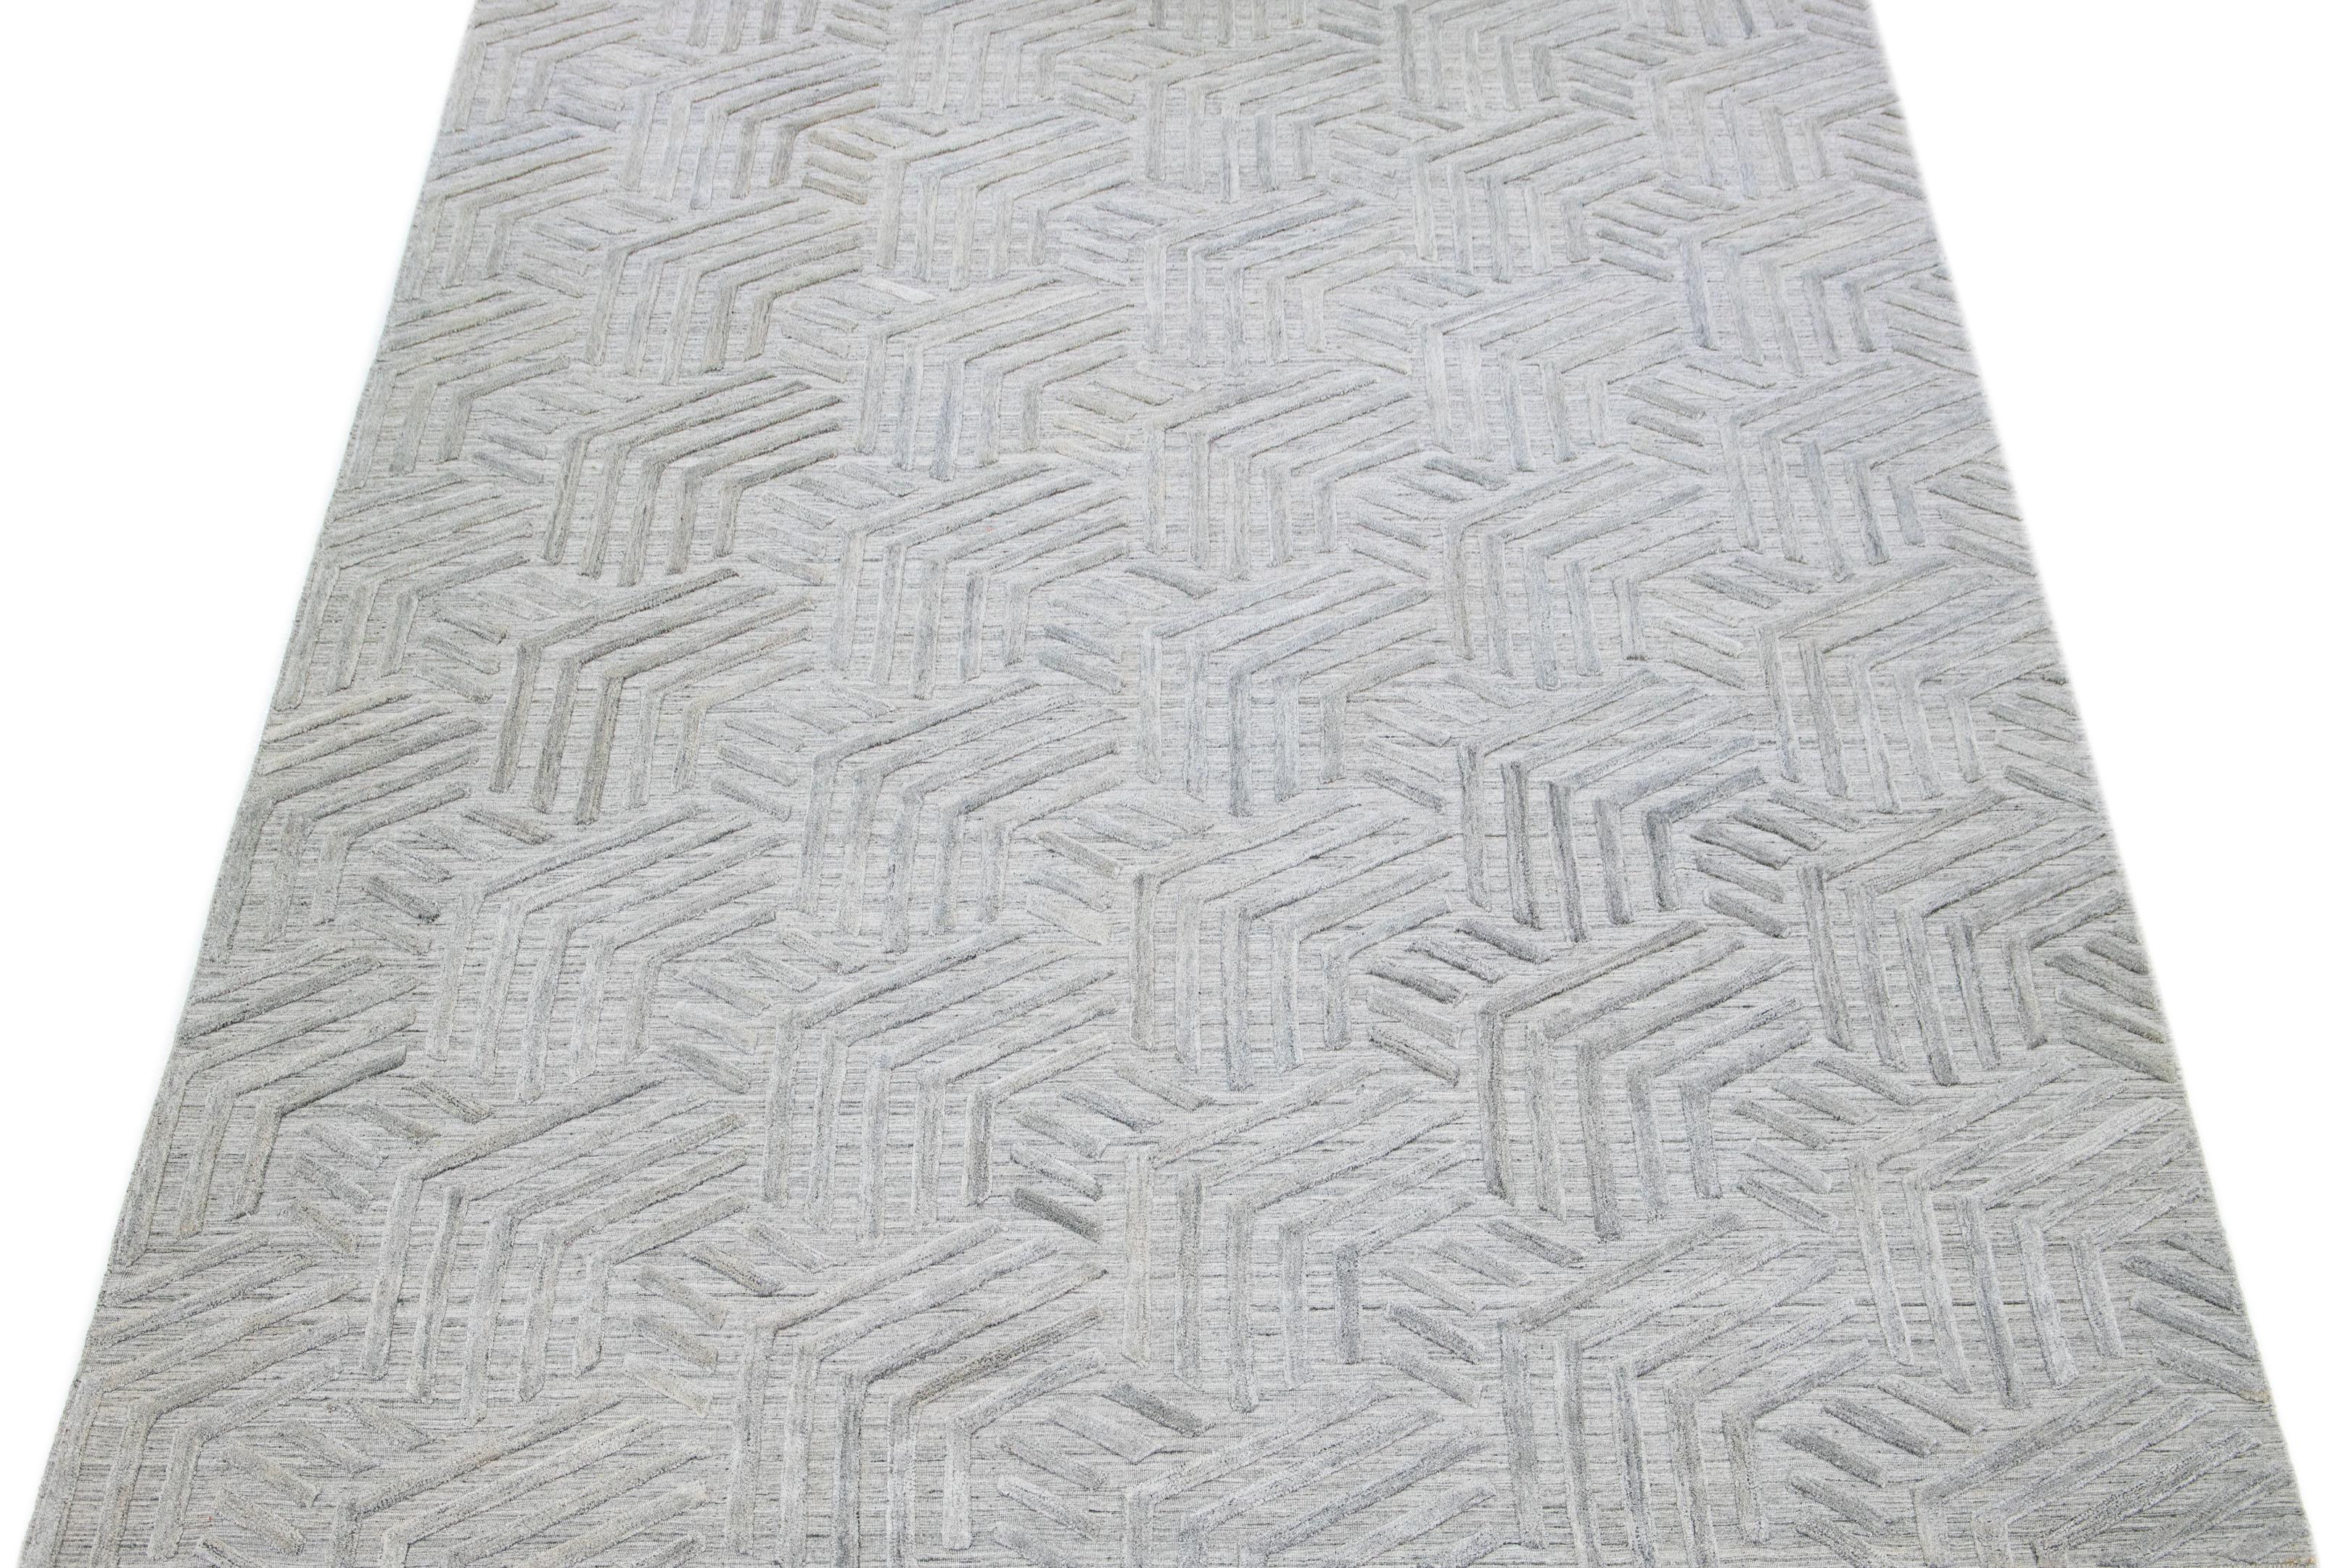 Erleben Sie die Schönheit eines modernen indischen Flachgewebe-Teppichs aus handgeknüpfter Wolle mit einem raffinierten grauen Feld. Zu seinem eleganten Charme trägt das strukturierte und anmutige elfenbeinfarbene geometrische Muster bei, das sich